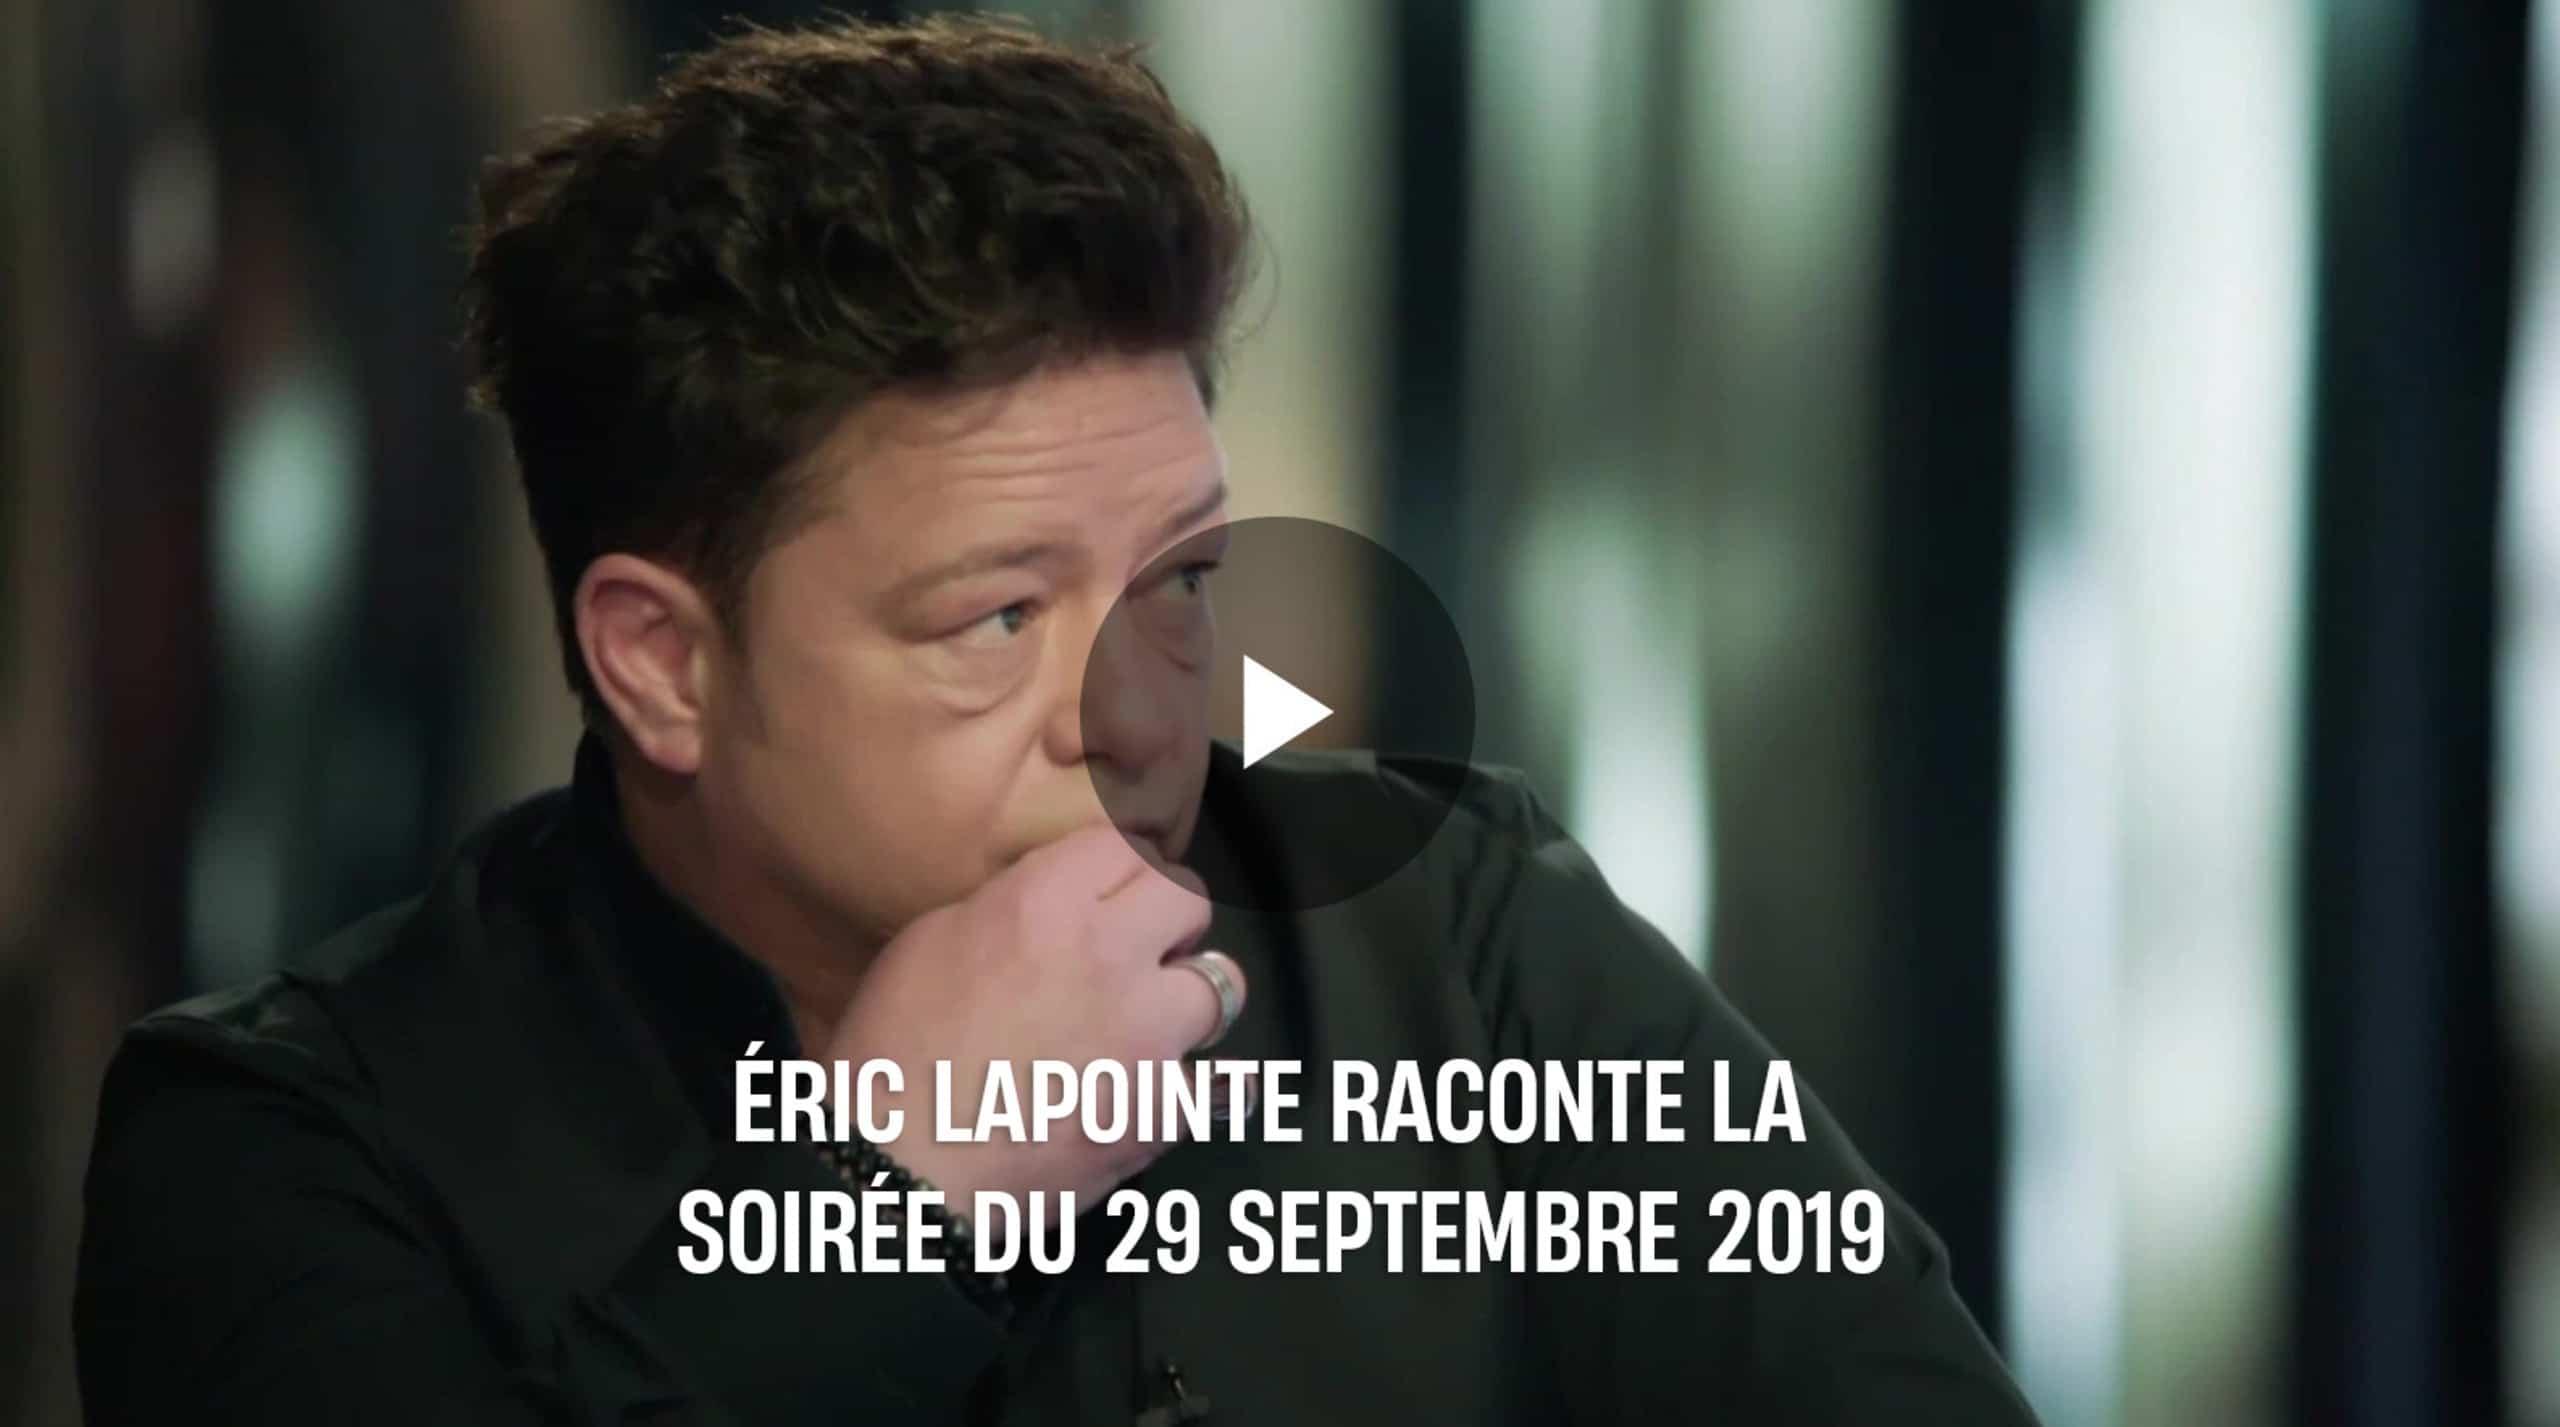 Éric Lapointe raconte la soirée du 29 septembre 2019 